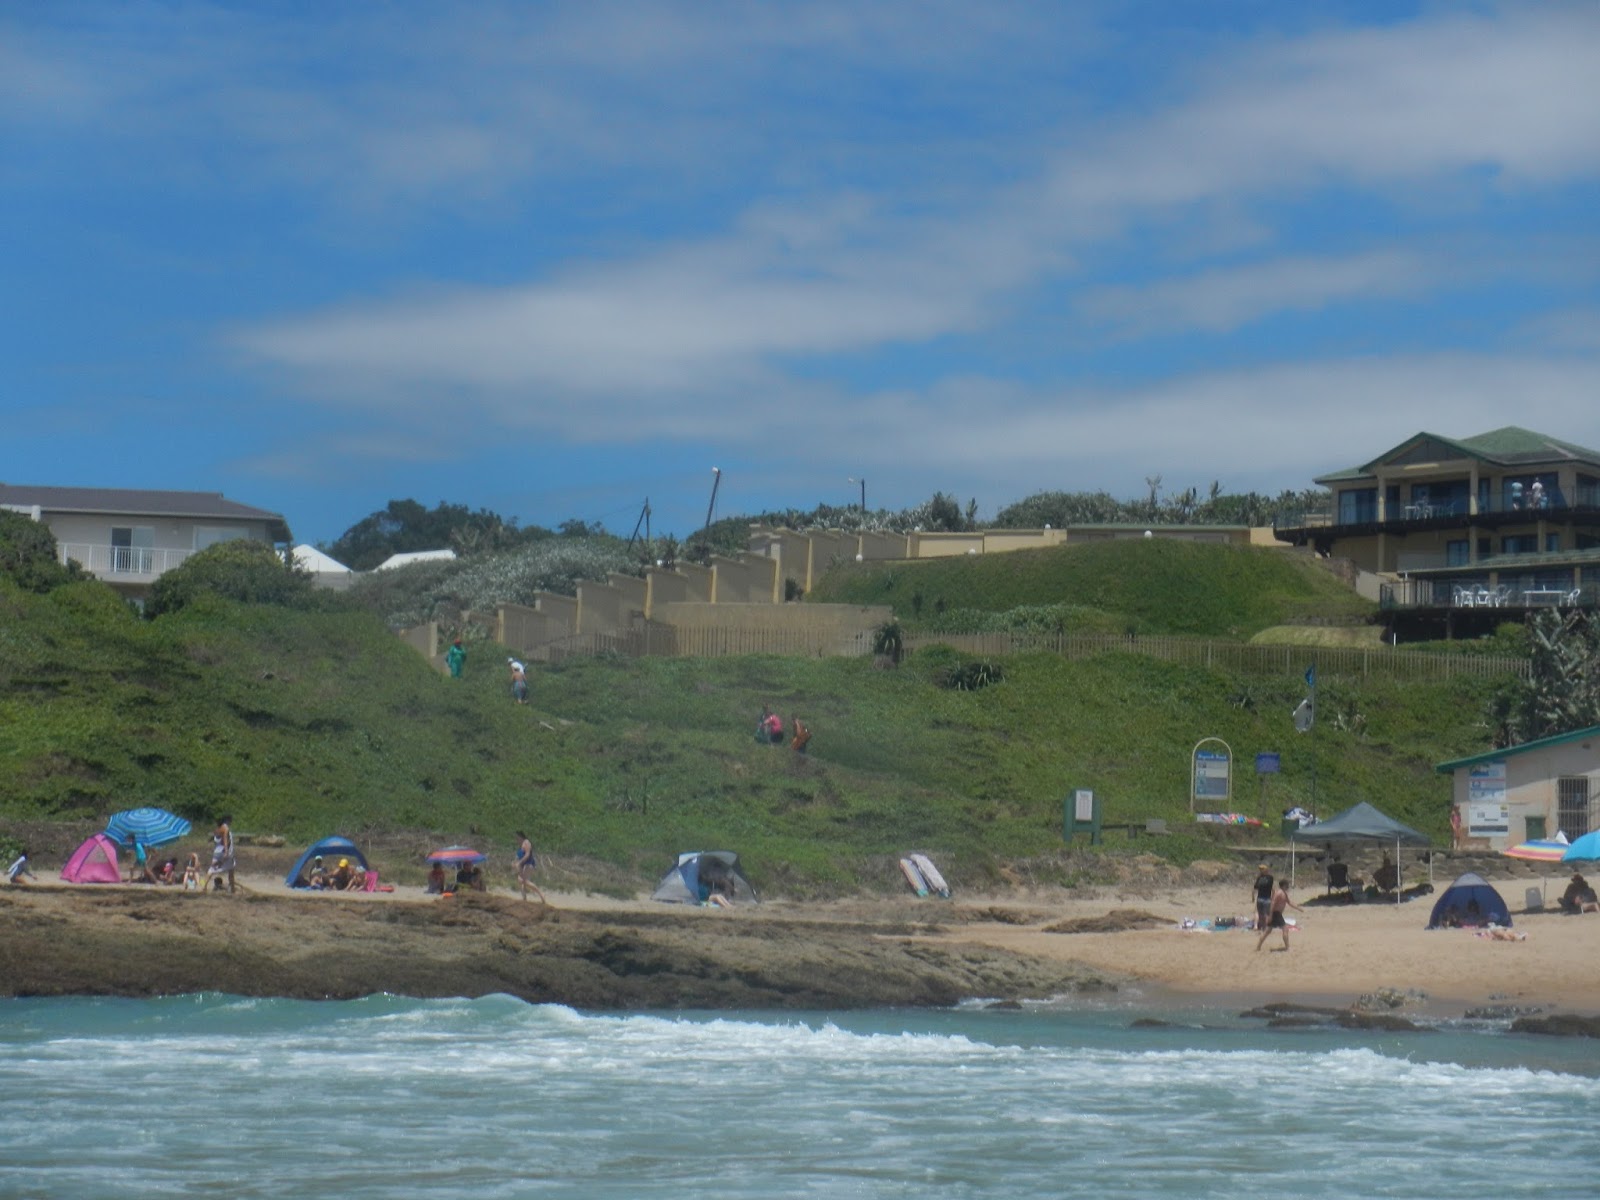 Foto di Umzumbe beach ubicato in zona naturale